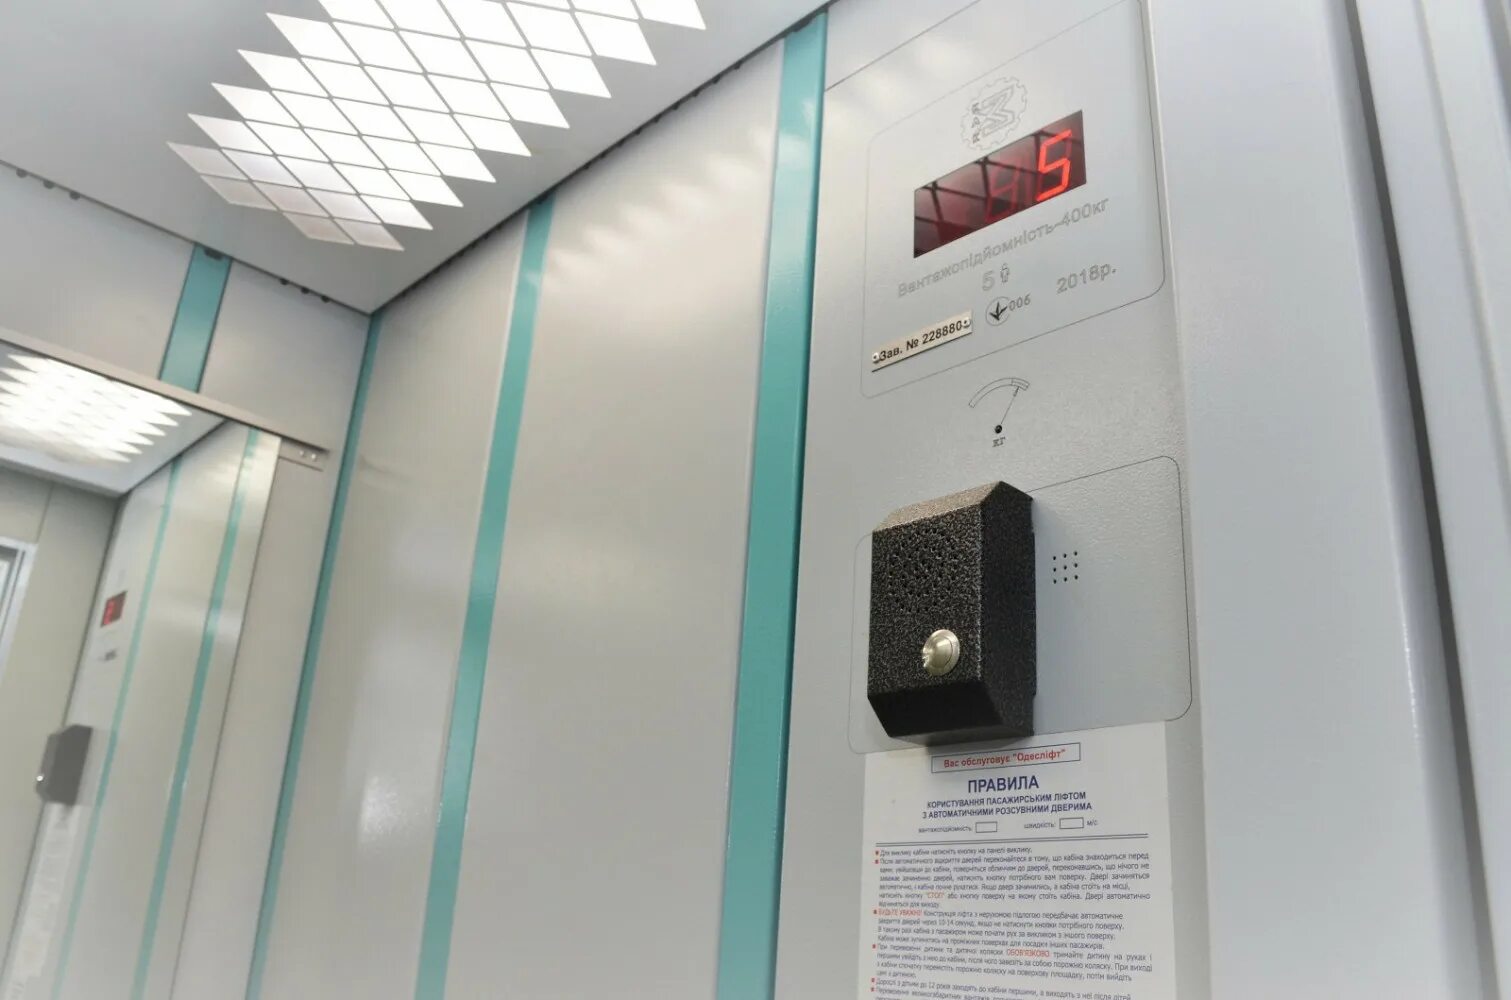 Панель лифта Сиблифт. Лифт Сиблифт кабина. Модернизированный лифт ЩЛЗ. Блок вызова диспетчера лифта. Телефон лифтовой службы